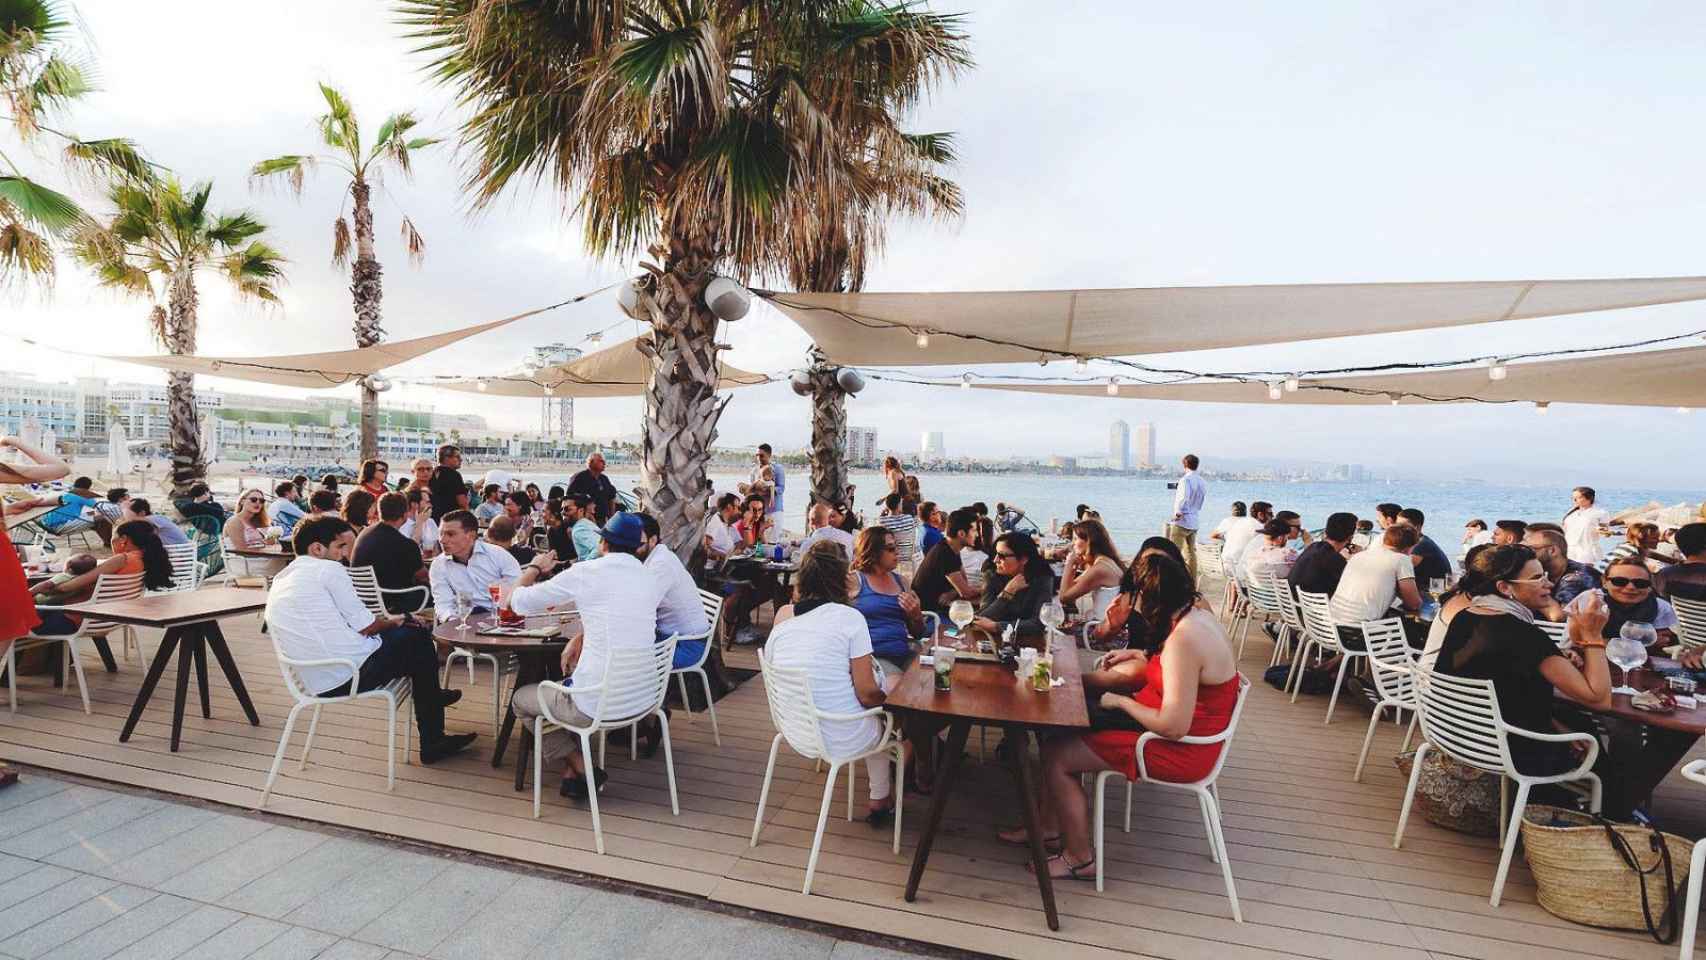 Un chiringuito de la playa de Barcelona lleno de gente / La Deliciosa